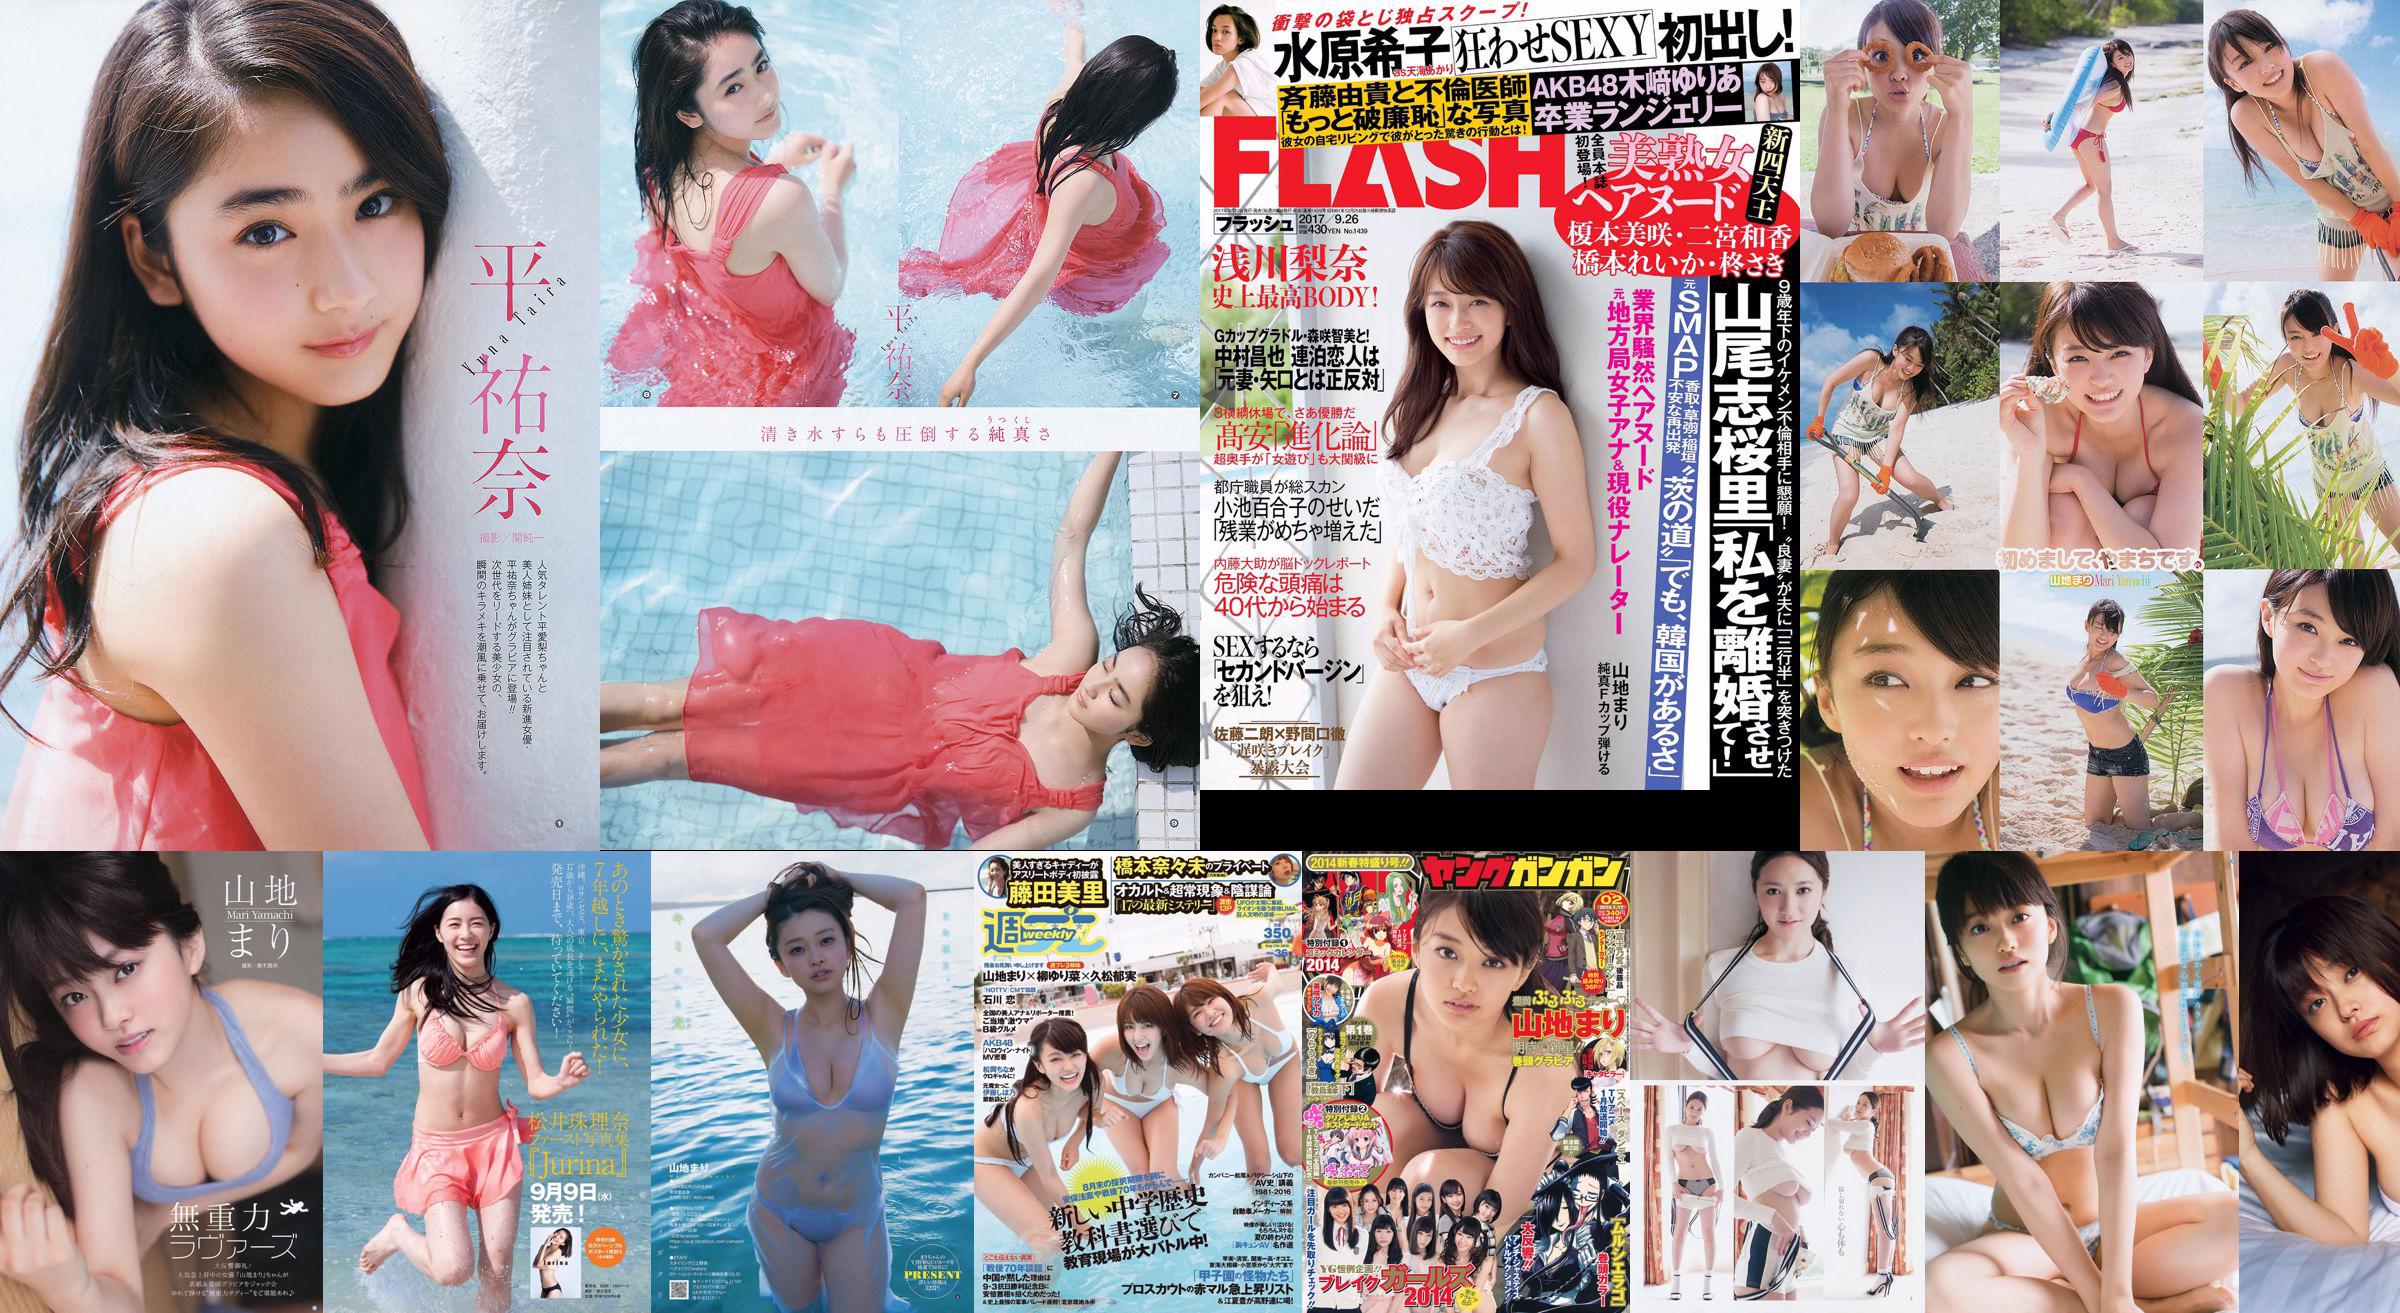 Berg Mari Matsumoto Erika Tang Tian Erika Shionji Misumi Takahashi Walnoot Watanabe Miyuki [Weekly Playboy] 2016 No.30 Photo Magazine No.b6c035 Pagina 4